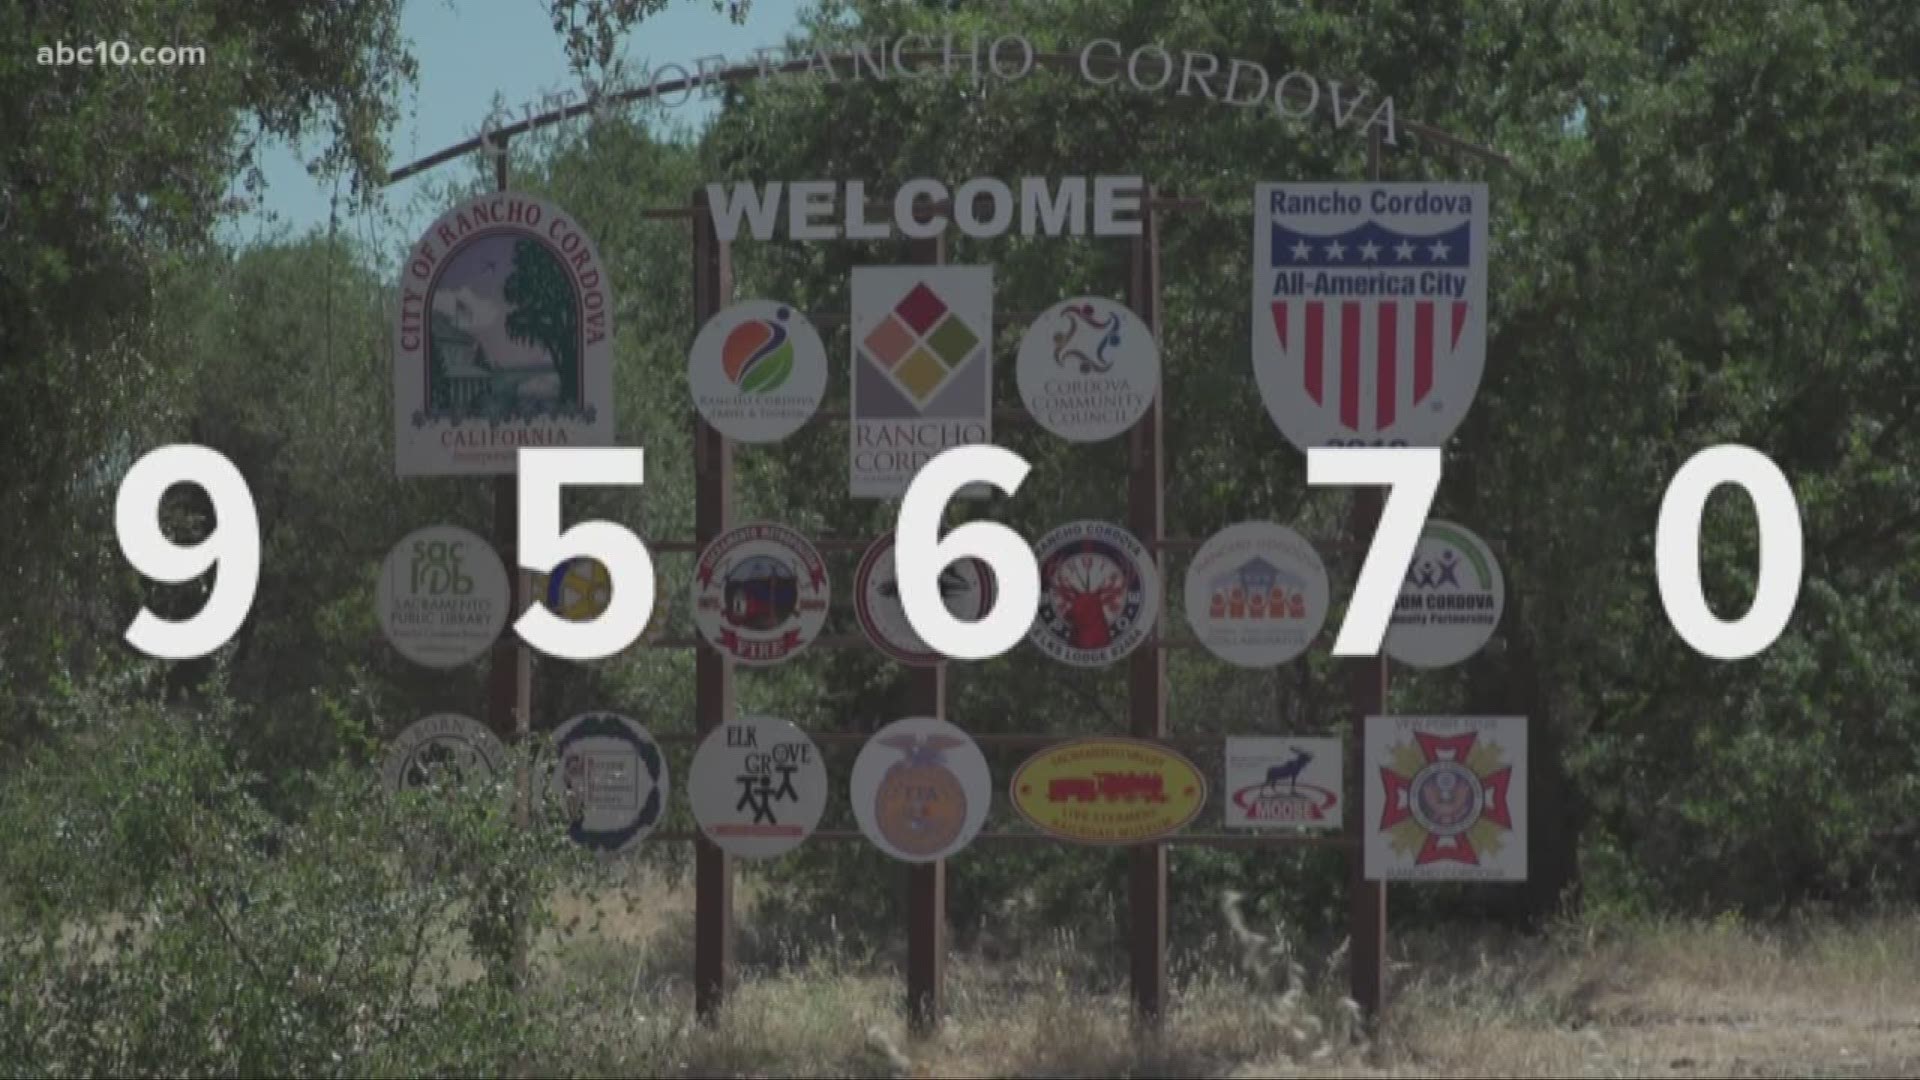 Inside Rancho Cordova's 95670 zip code | Unzipped | cbs8.com